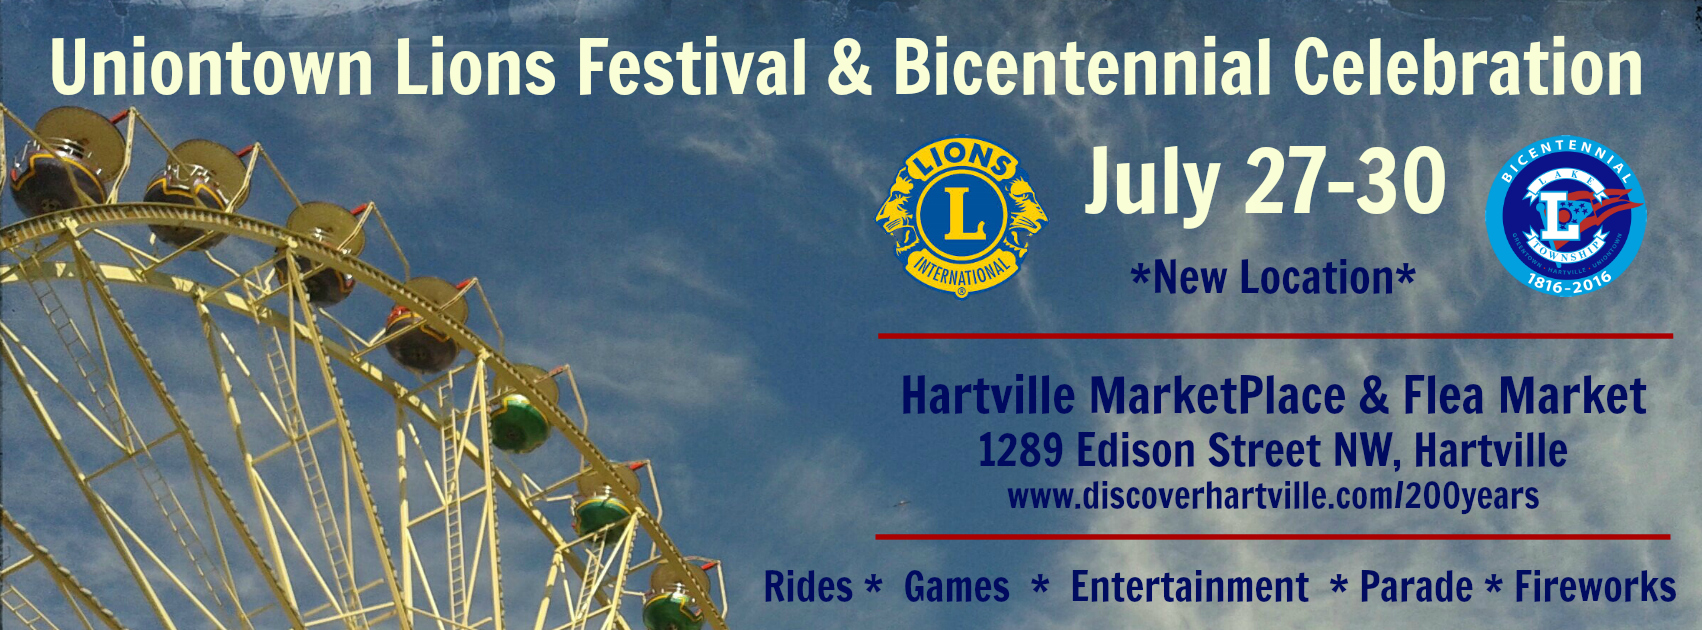 Uniontown Lions Festival & Bicentennial Celebration